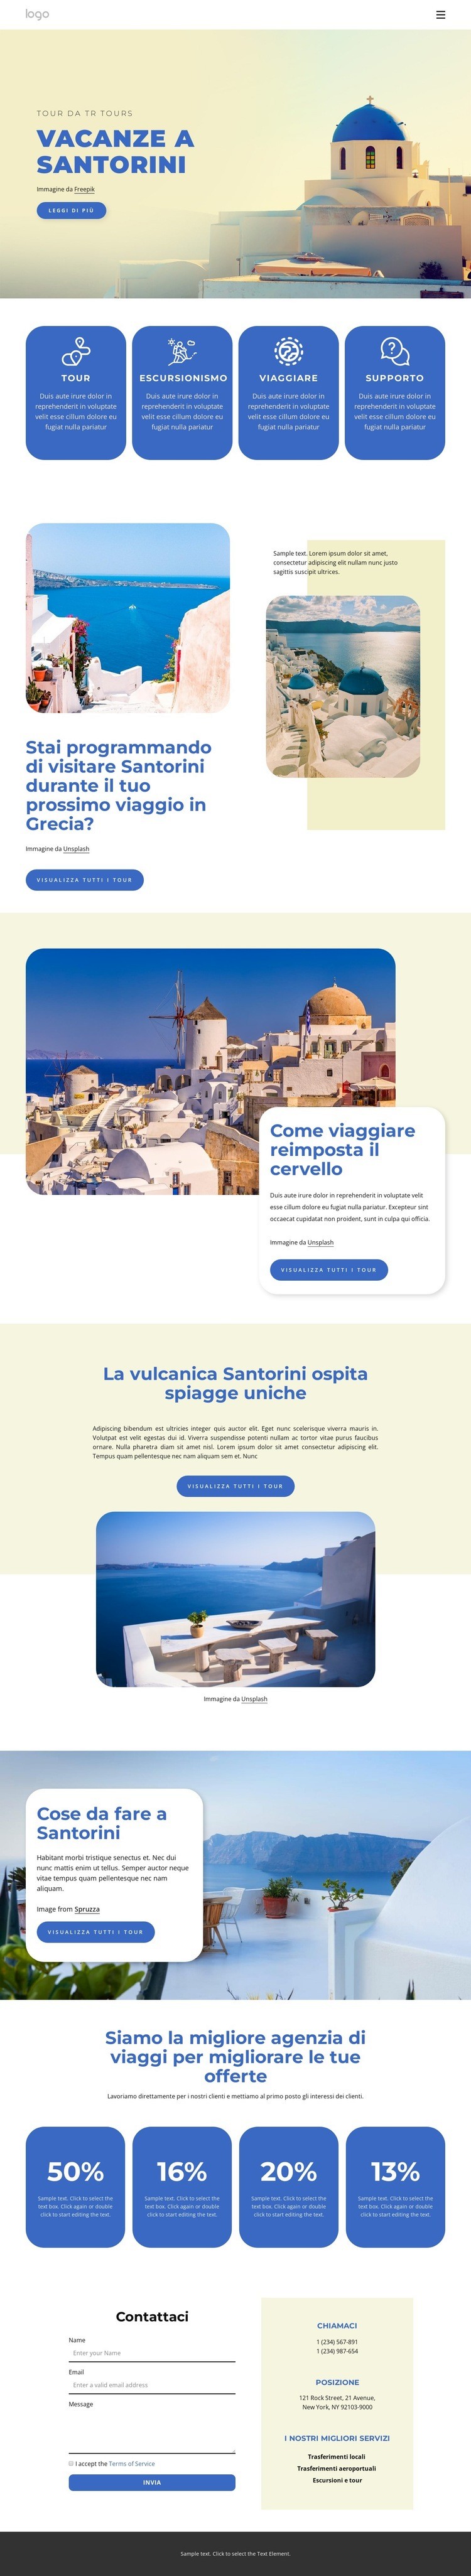 Vacanze a Santorini Un modello di pagina